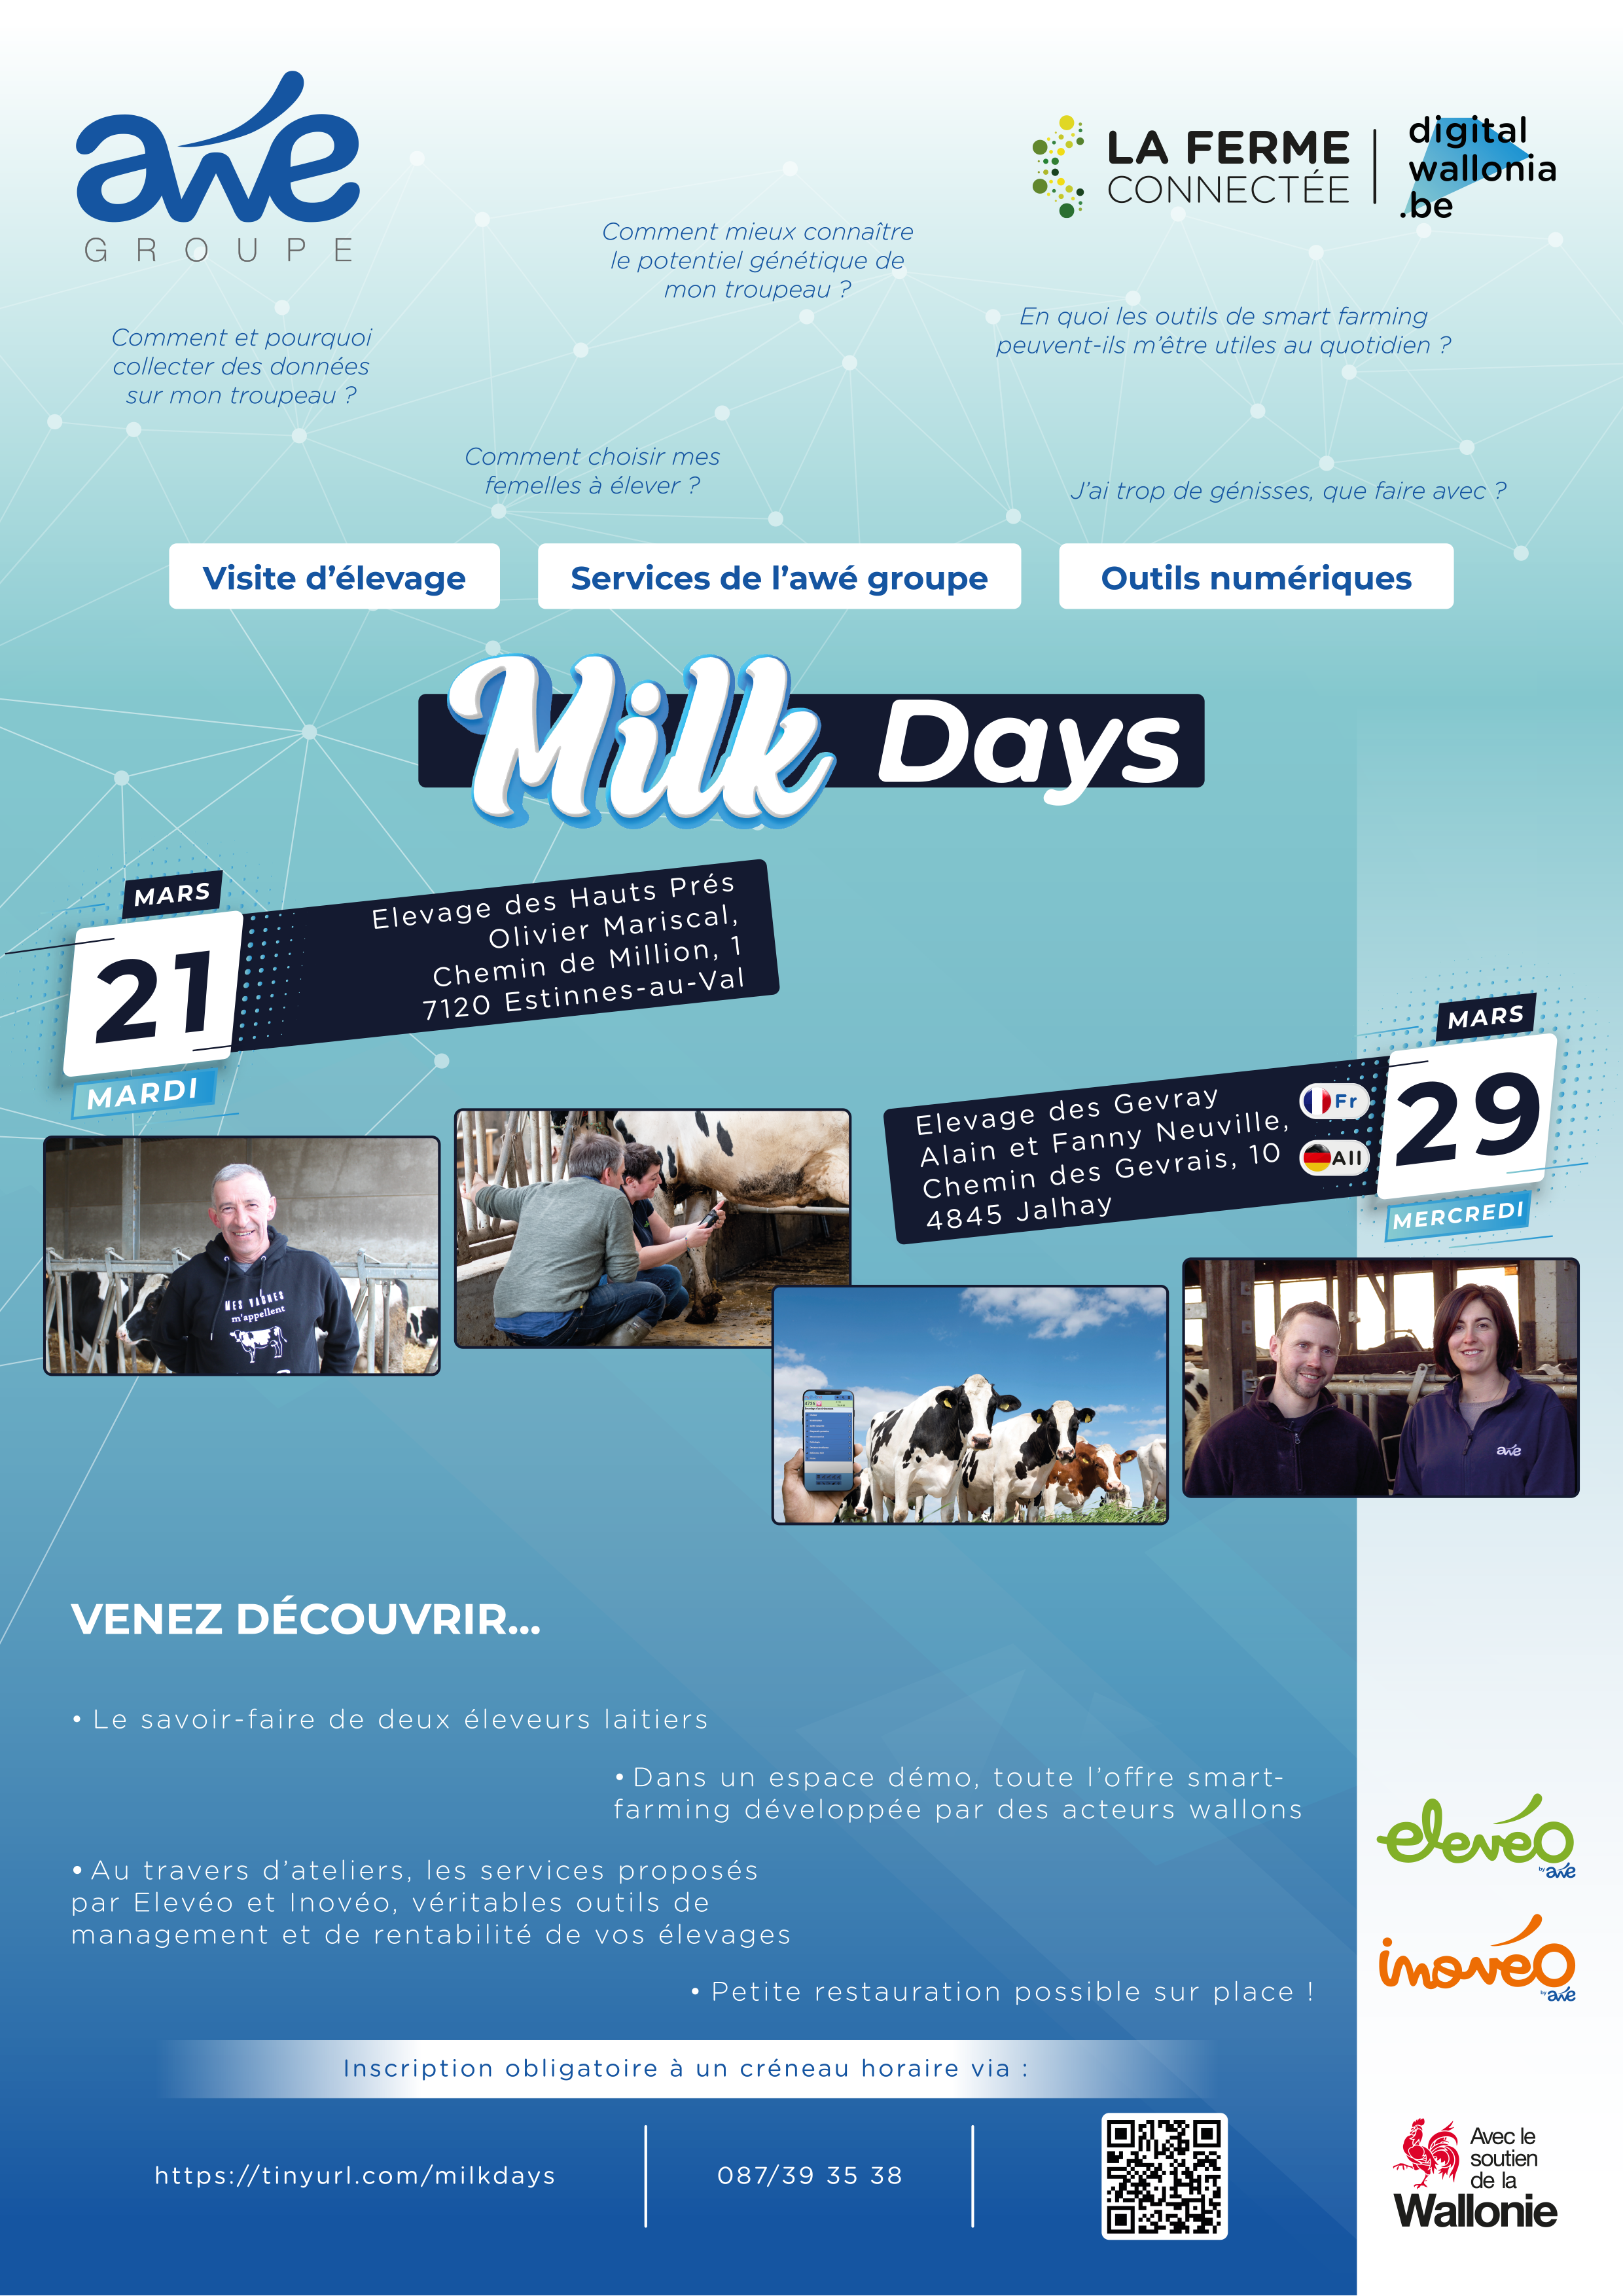 Milk Days : visite élevage des Hauts Prés